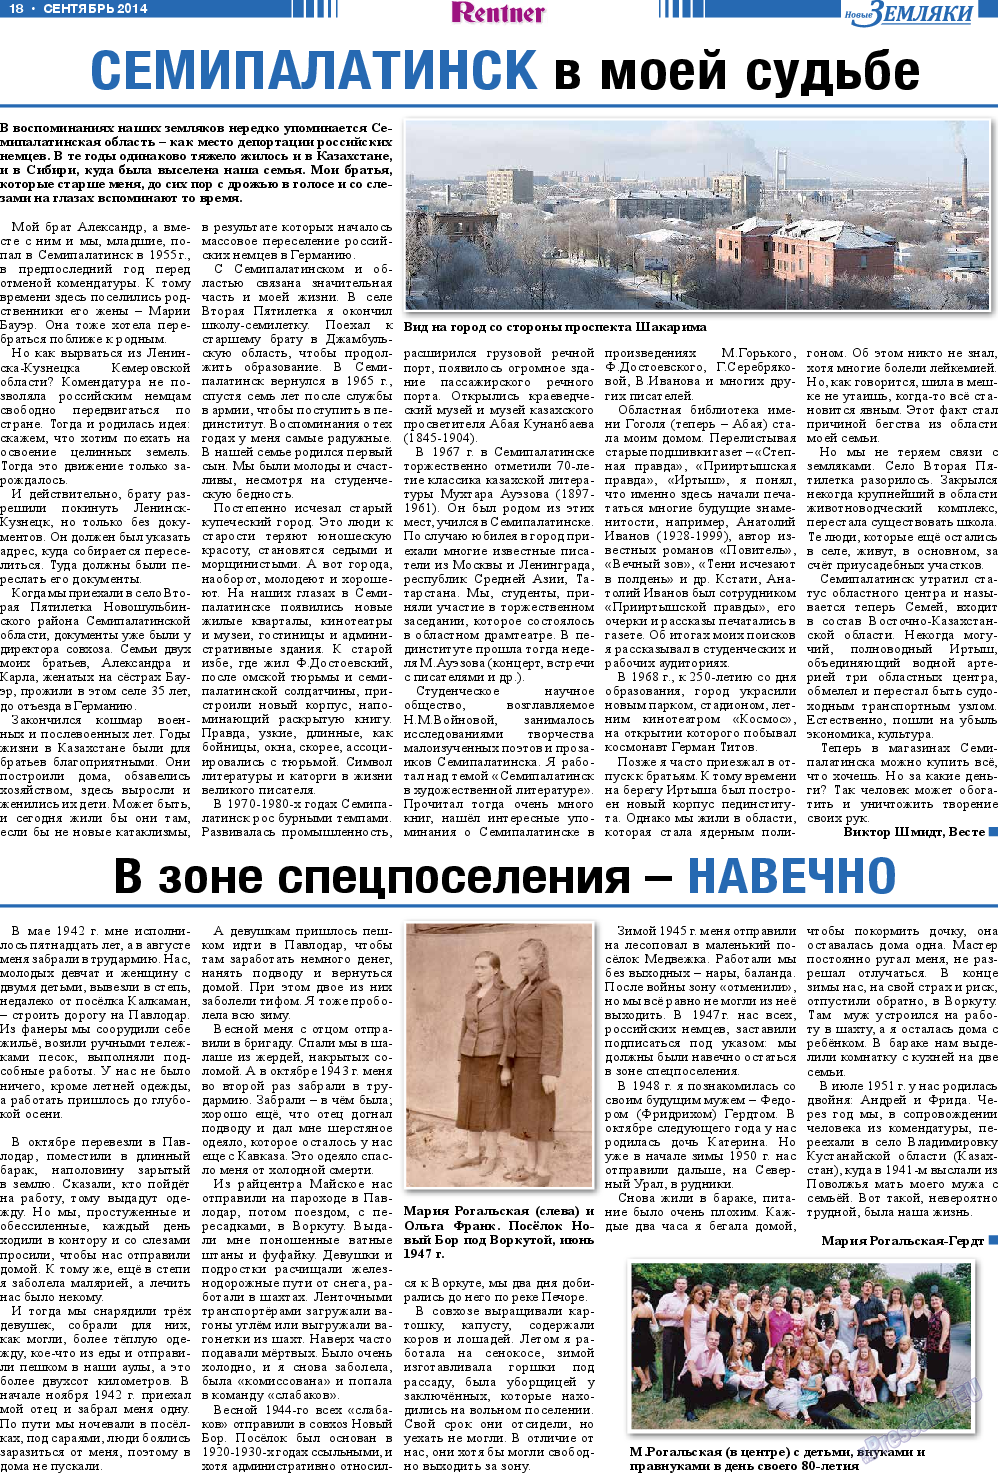 Новые Земляки, газета. 2014 №9 стр.18